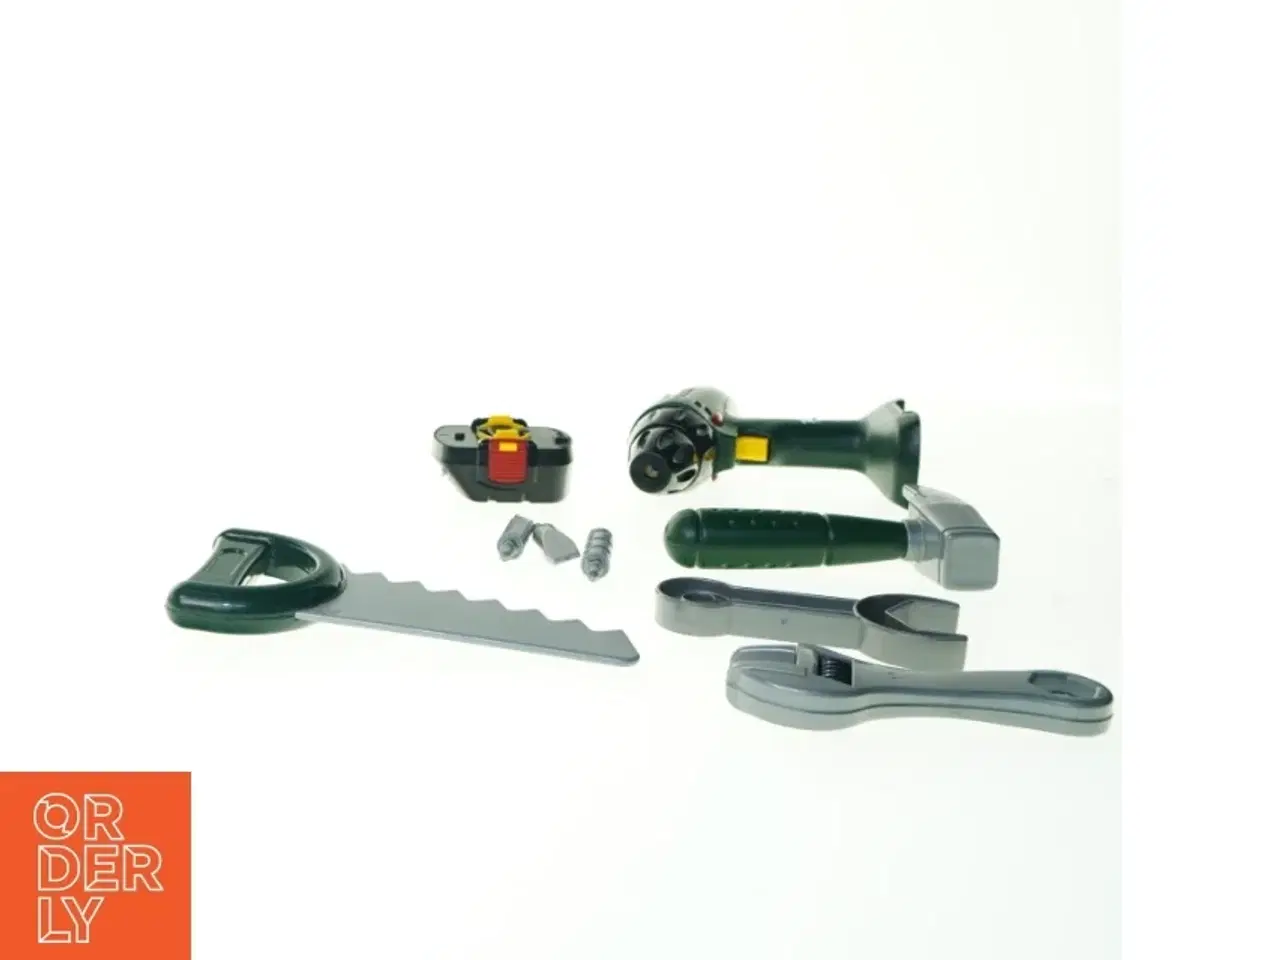 Billede 2 - Legetøjs værktøj fra Bosch (str. 15 x 16 cm)